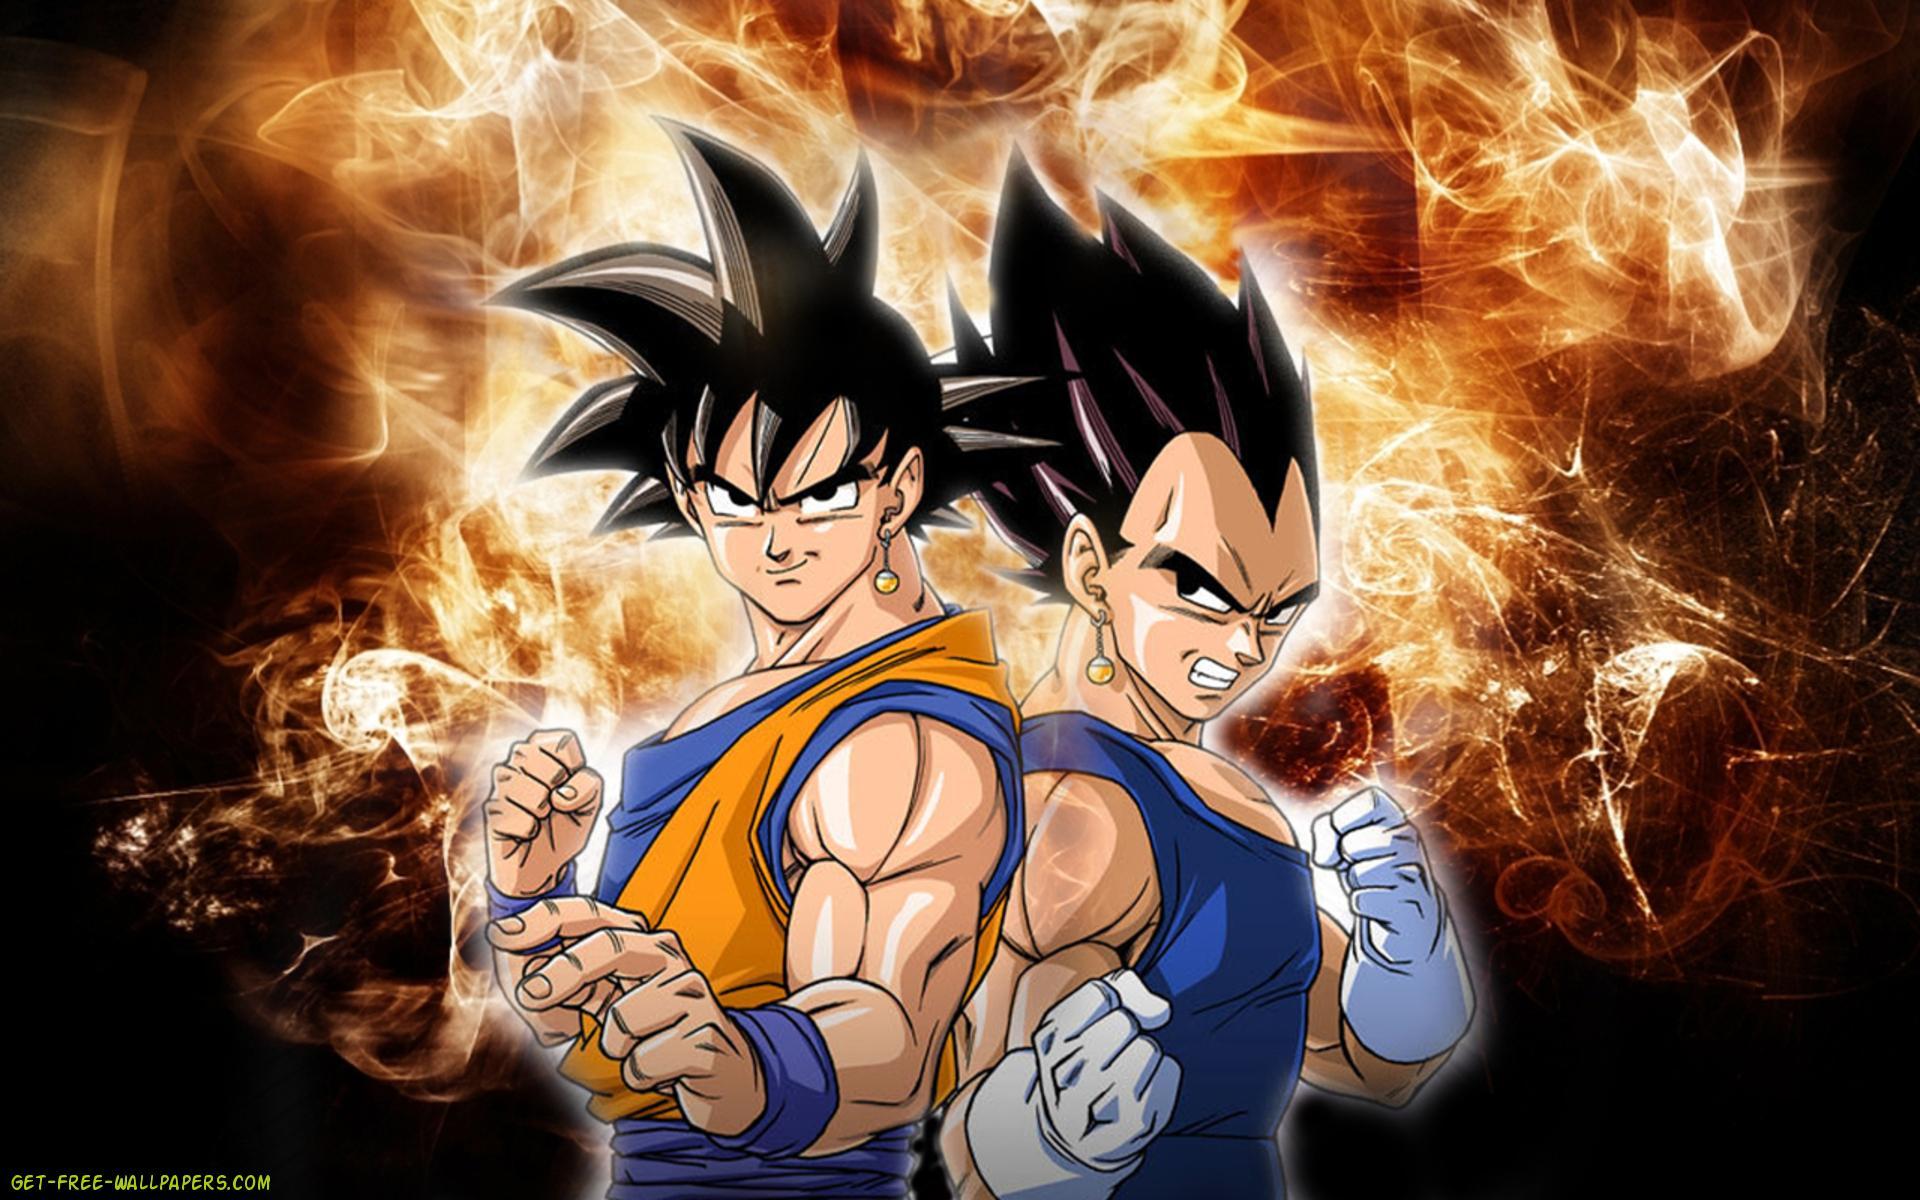 Fondos de pantalla de Goku y Vegeta - FondosMil